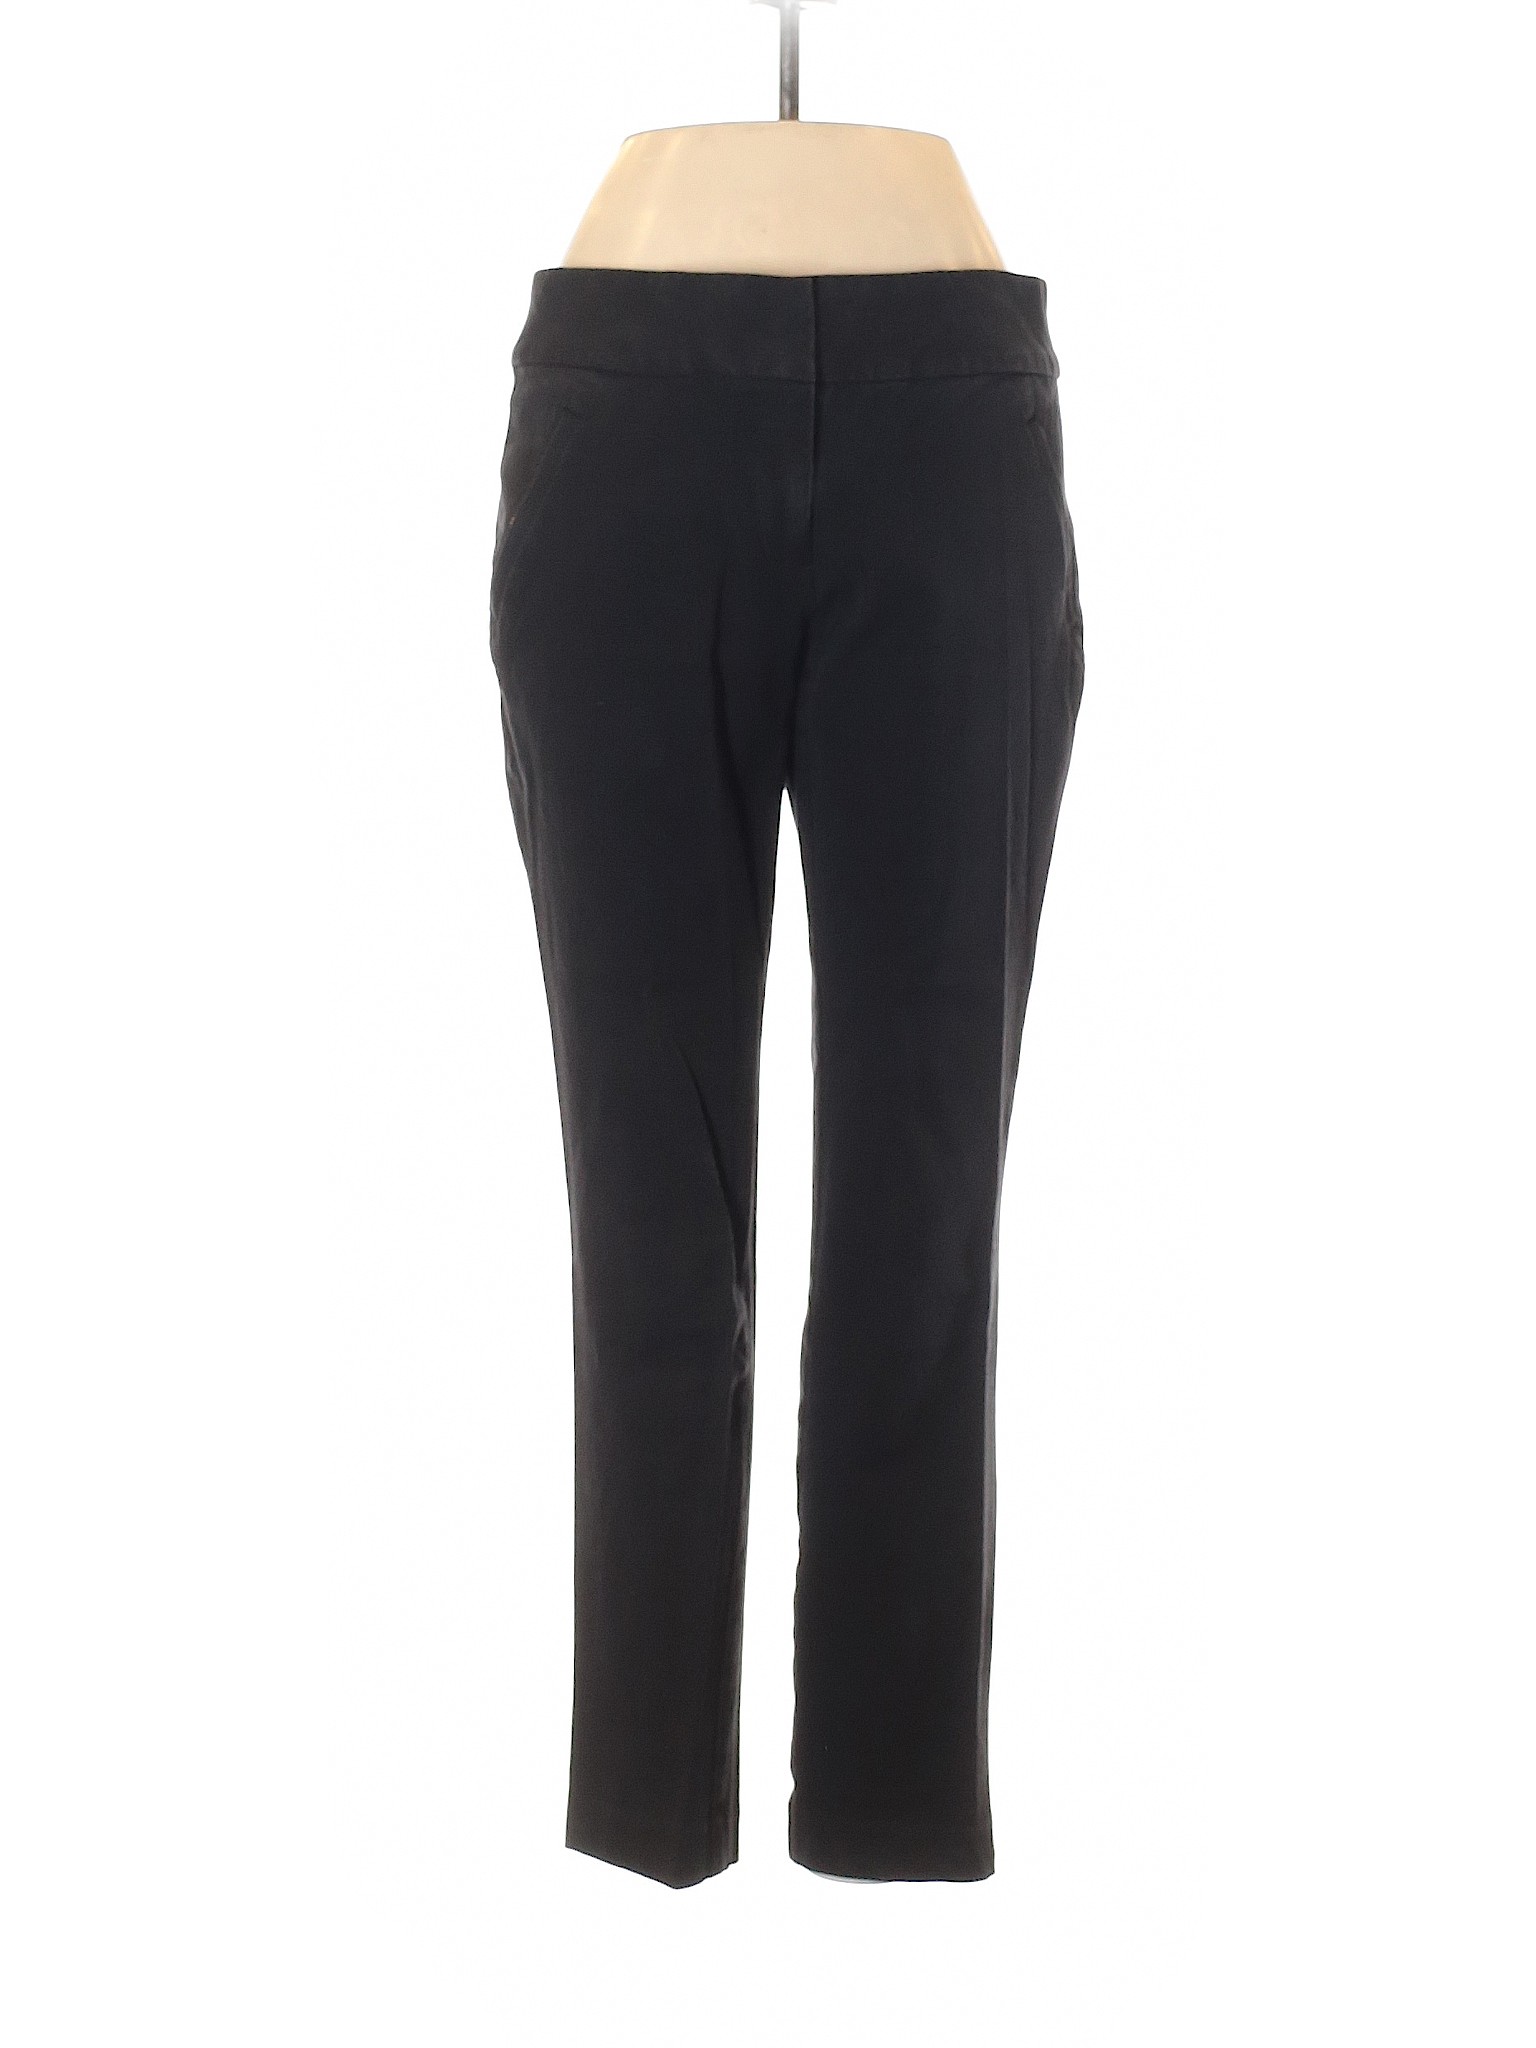 Ann Taylor LOFT Outlet Women Black Dress Pants 2 | eBay